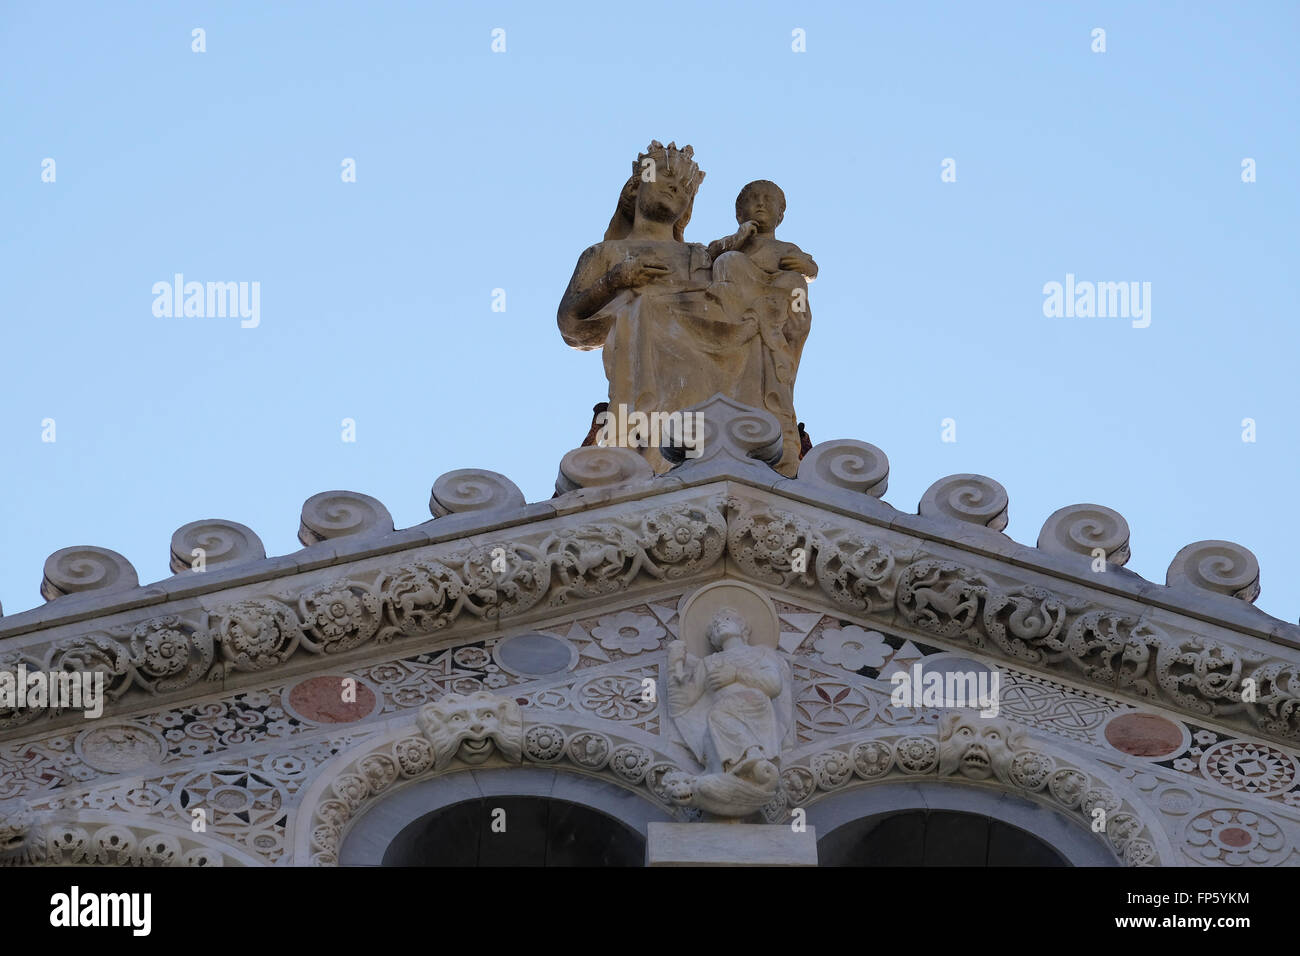 La Virgen María con el niño Jesús, la Catedral de Santa María de la Asunción de la Piazza dei Miracoli, en Pisa, Italia Foto de stock